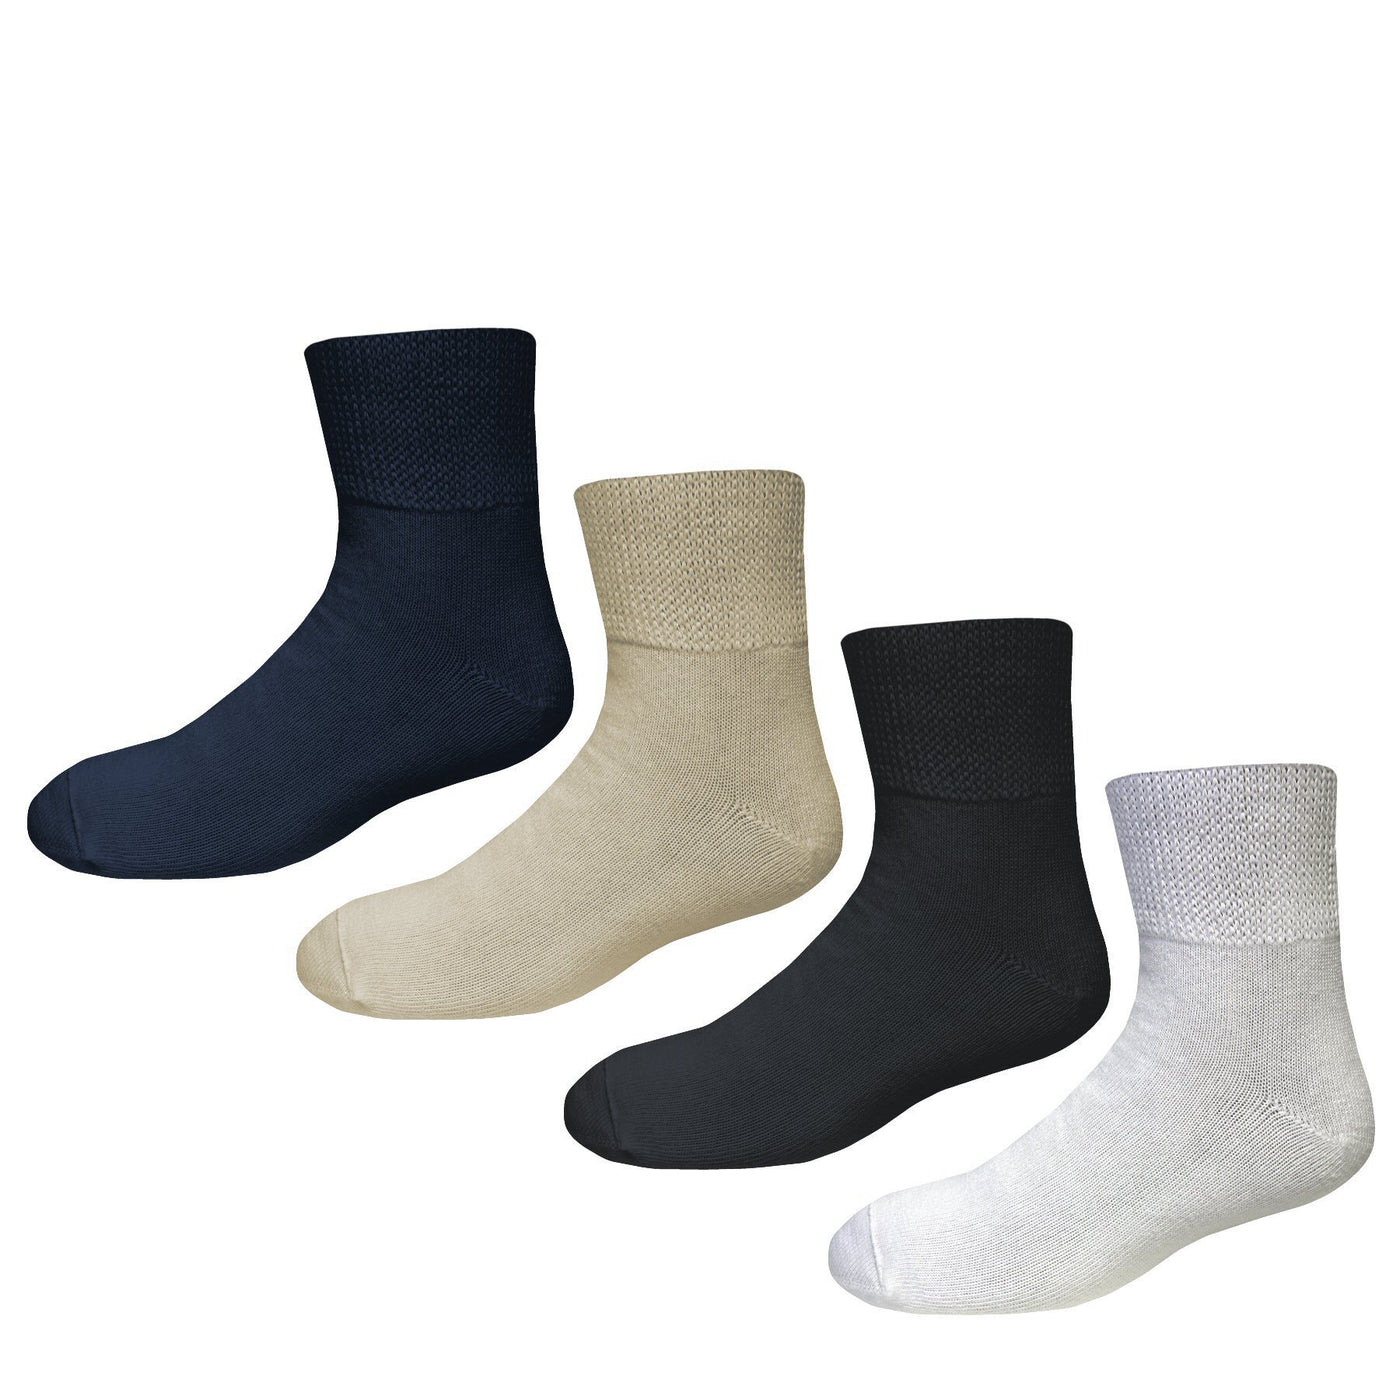 Bigger Big Foot Comfort Cotton Diabetic Quarter Socks